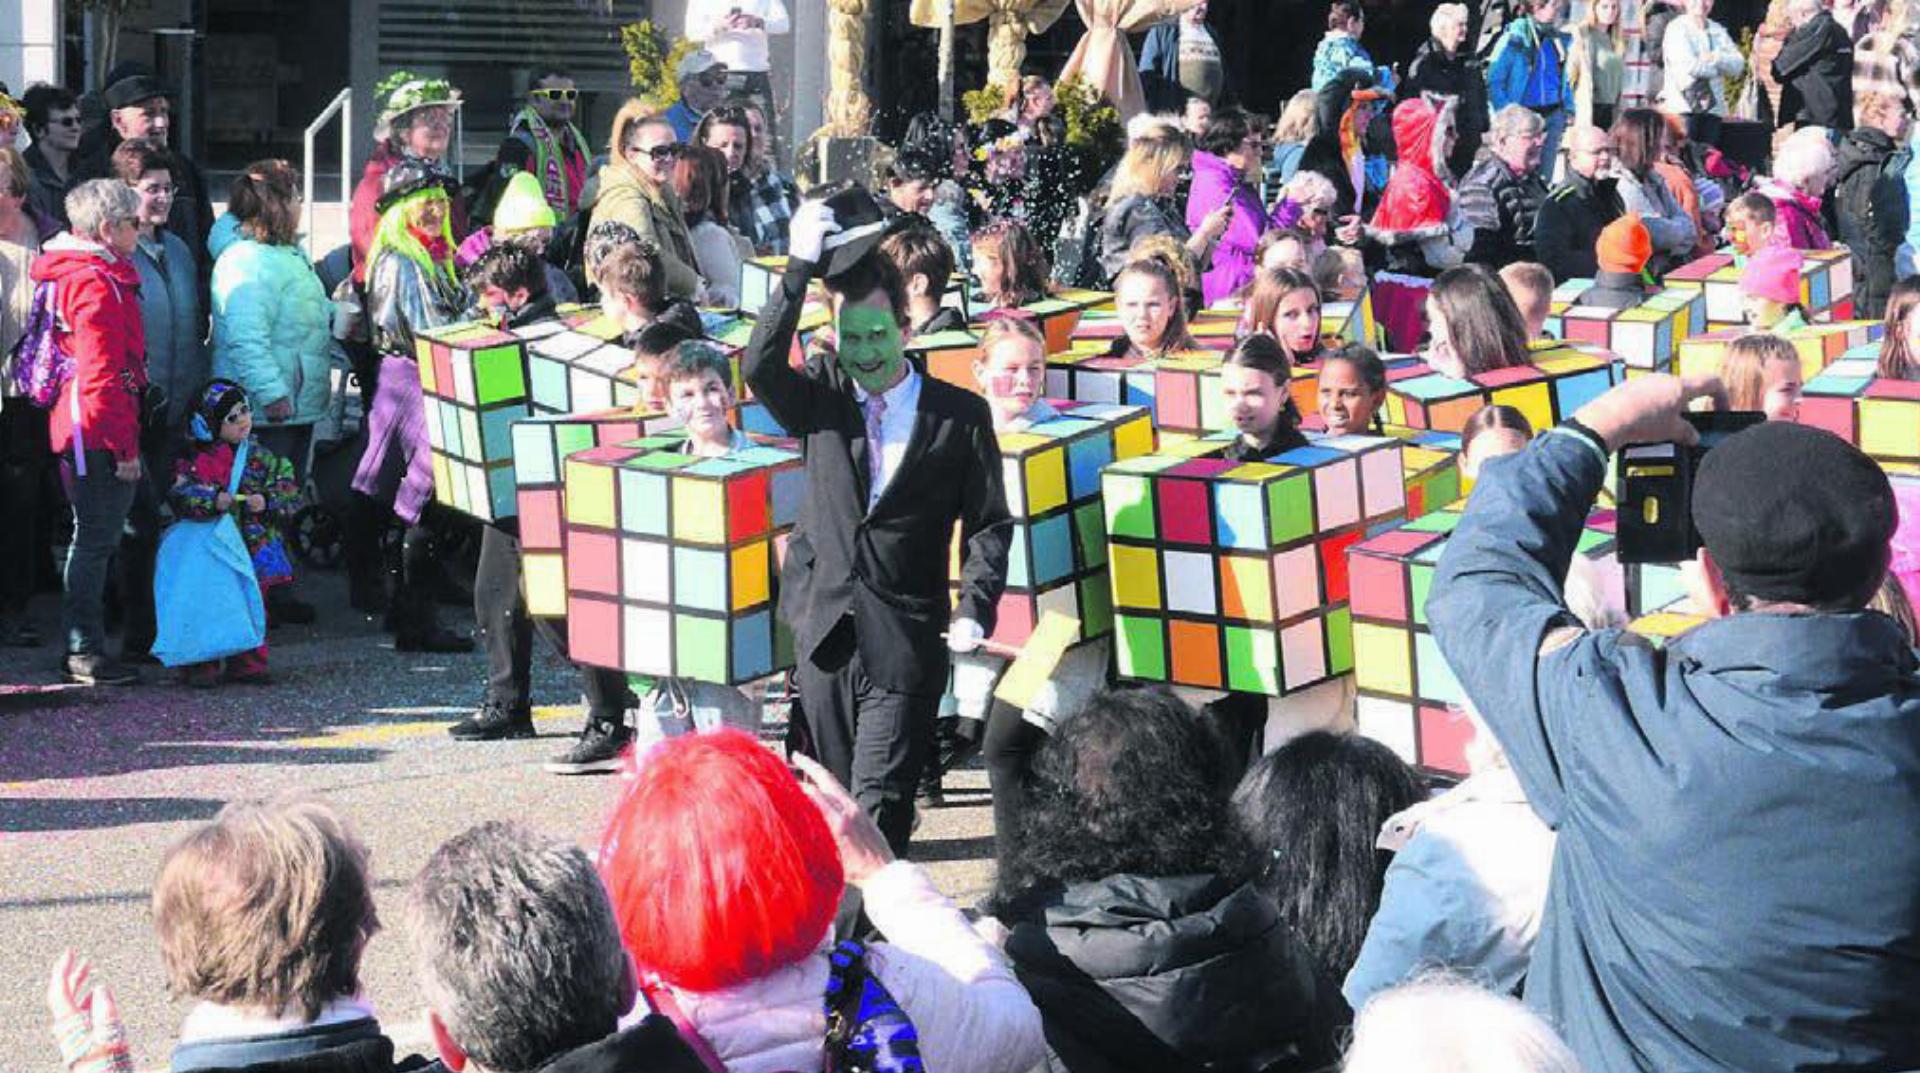 Der als Zauberwürfel bekannt gewordene Rubic‘s Cube feiert dieses Jahr seinen 50. Geburtstag. Und erlebt dank der 5. Klasse von Corinne Mühlemann auch in Villmergen ein Revival. Einziger Nachteil: In diesem Kostüm können die Kinder nicht zurückwinken.